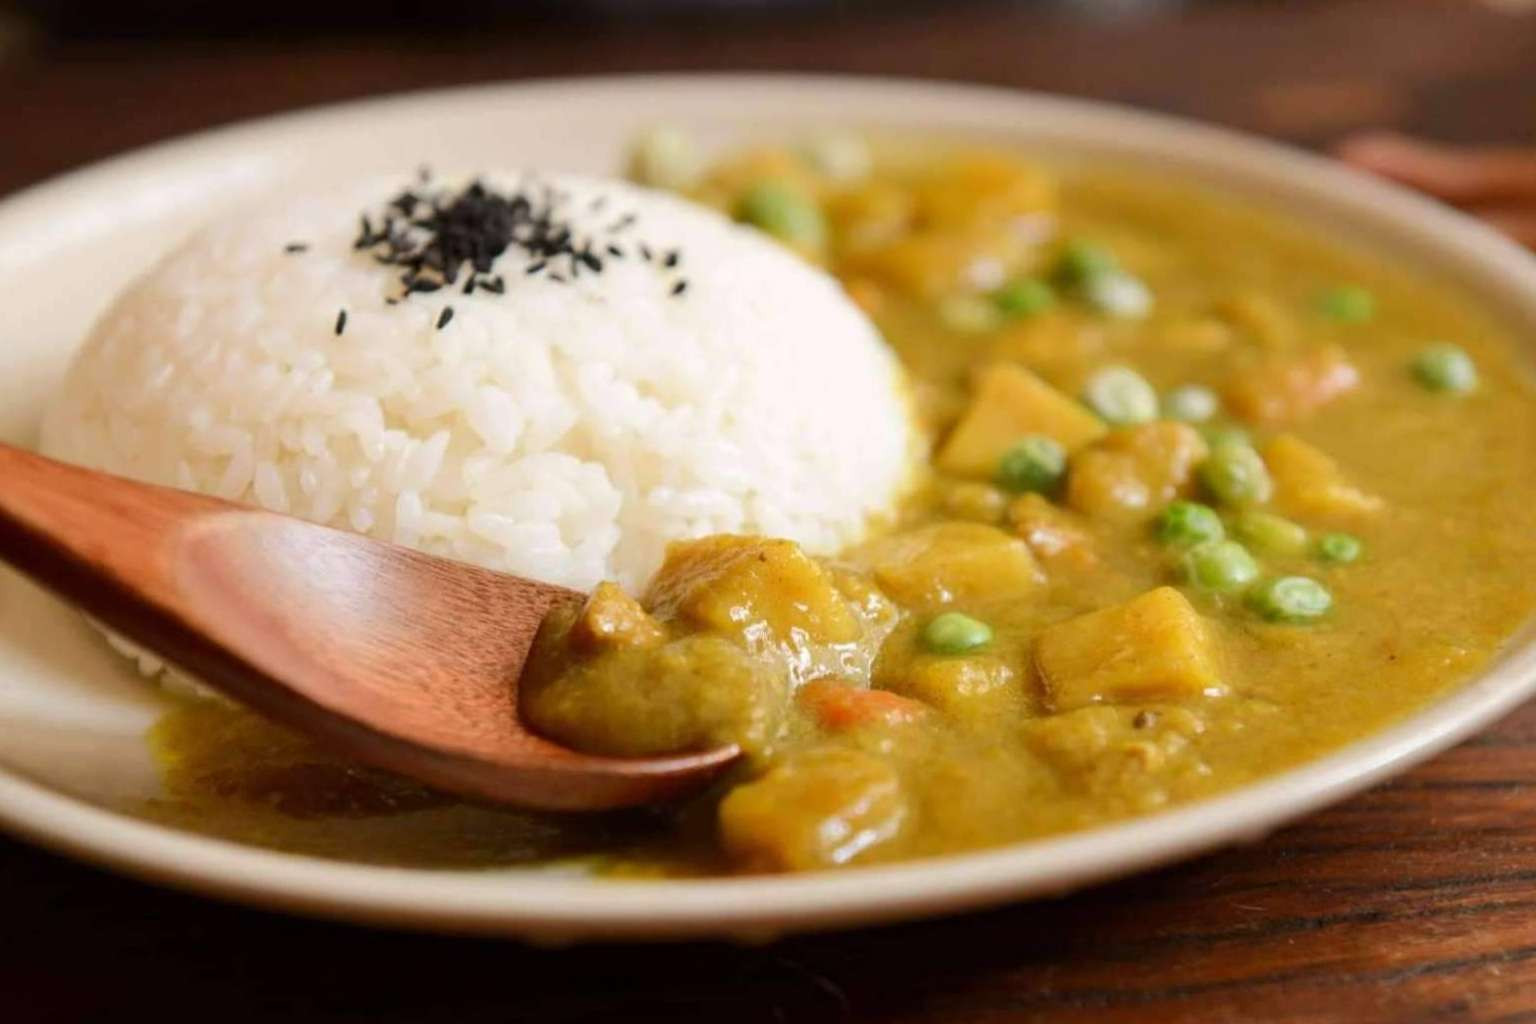  Pollo al curry vegano, la nueva creación de Medsuperfoods cargada de proteína 